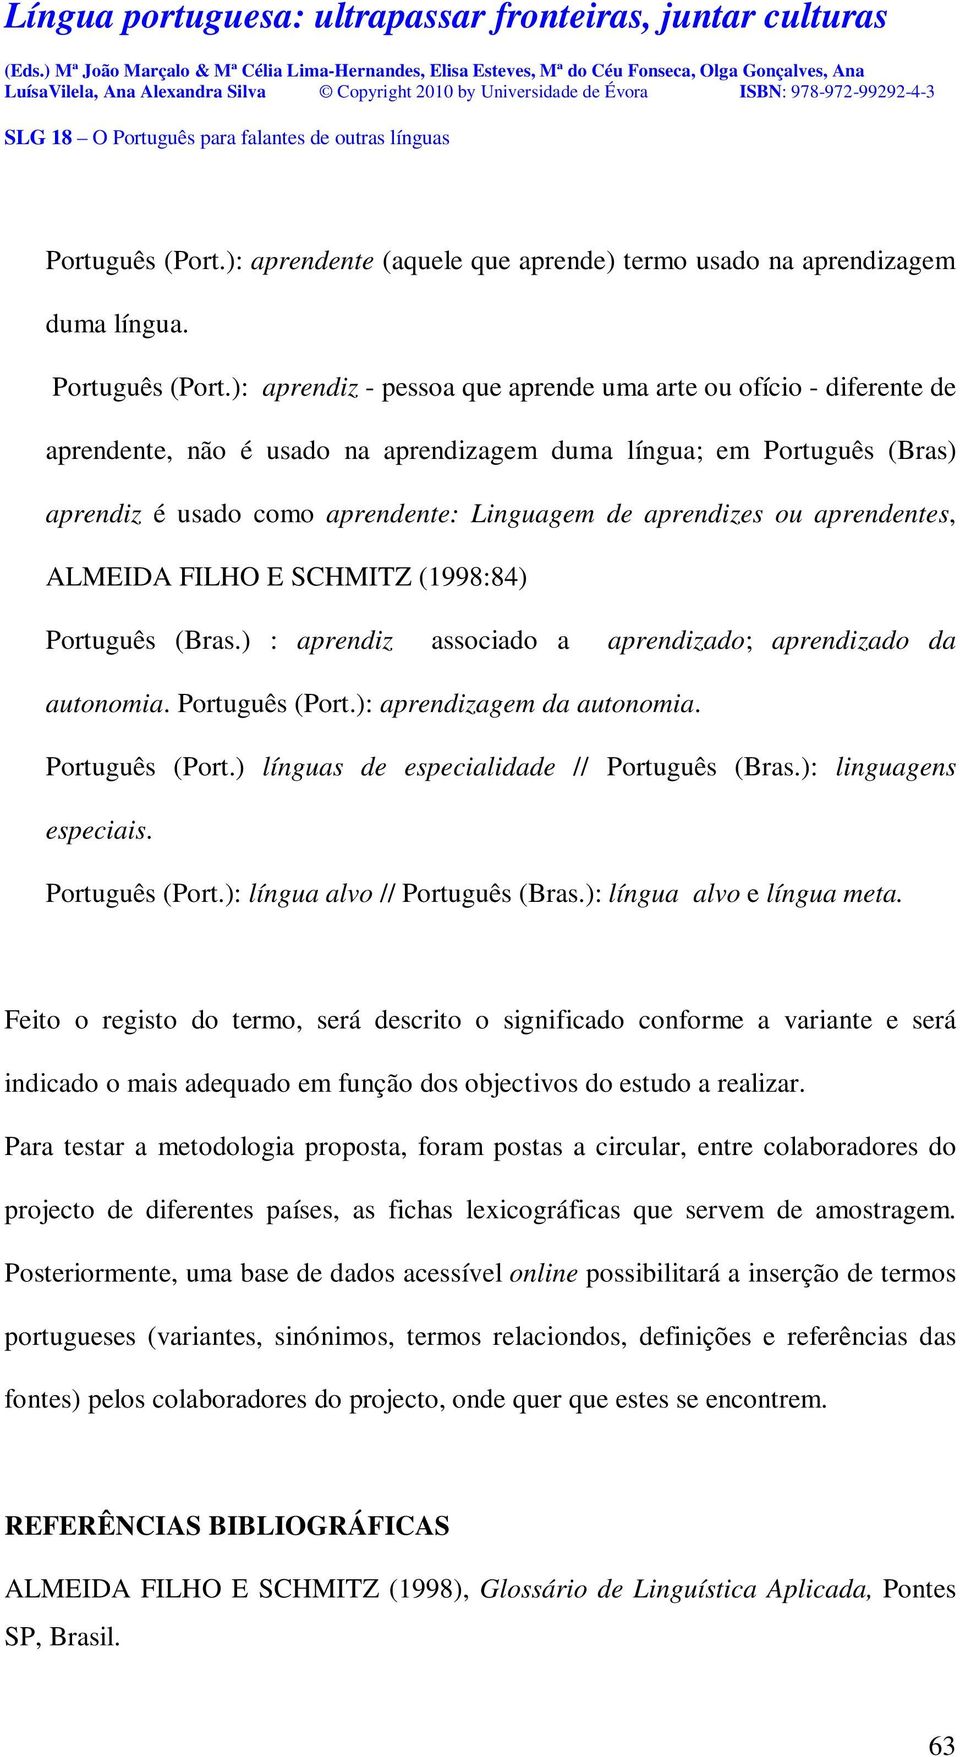 ou aprendentes, ALMEIDA FILHO E SCHMITZ (1998:84) Português (Bras.) : aprendiz associado a aprendizado; aprendizado da autonomia. Português (Port.): aprendizagem da autonomia. Português (Port.) línguas de especialidade // Português (Bras.